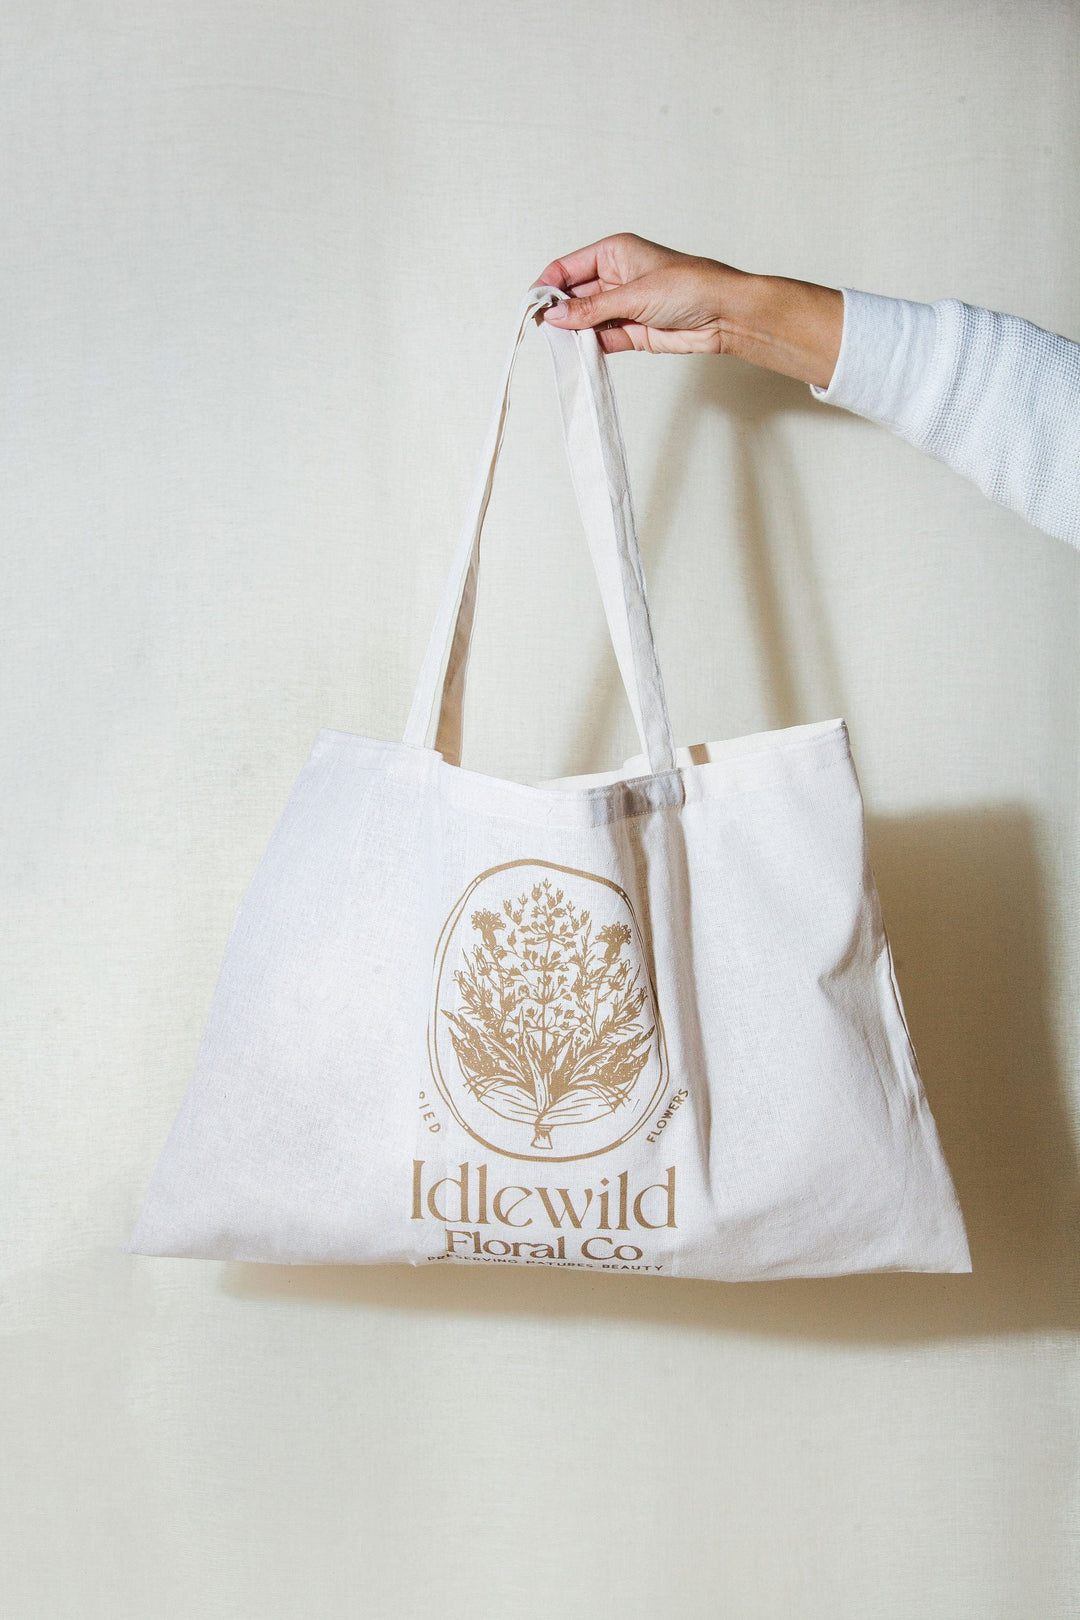 Idlewild Floral Co. Idlewild Market Bag